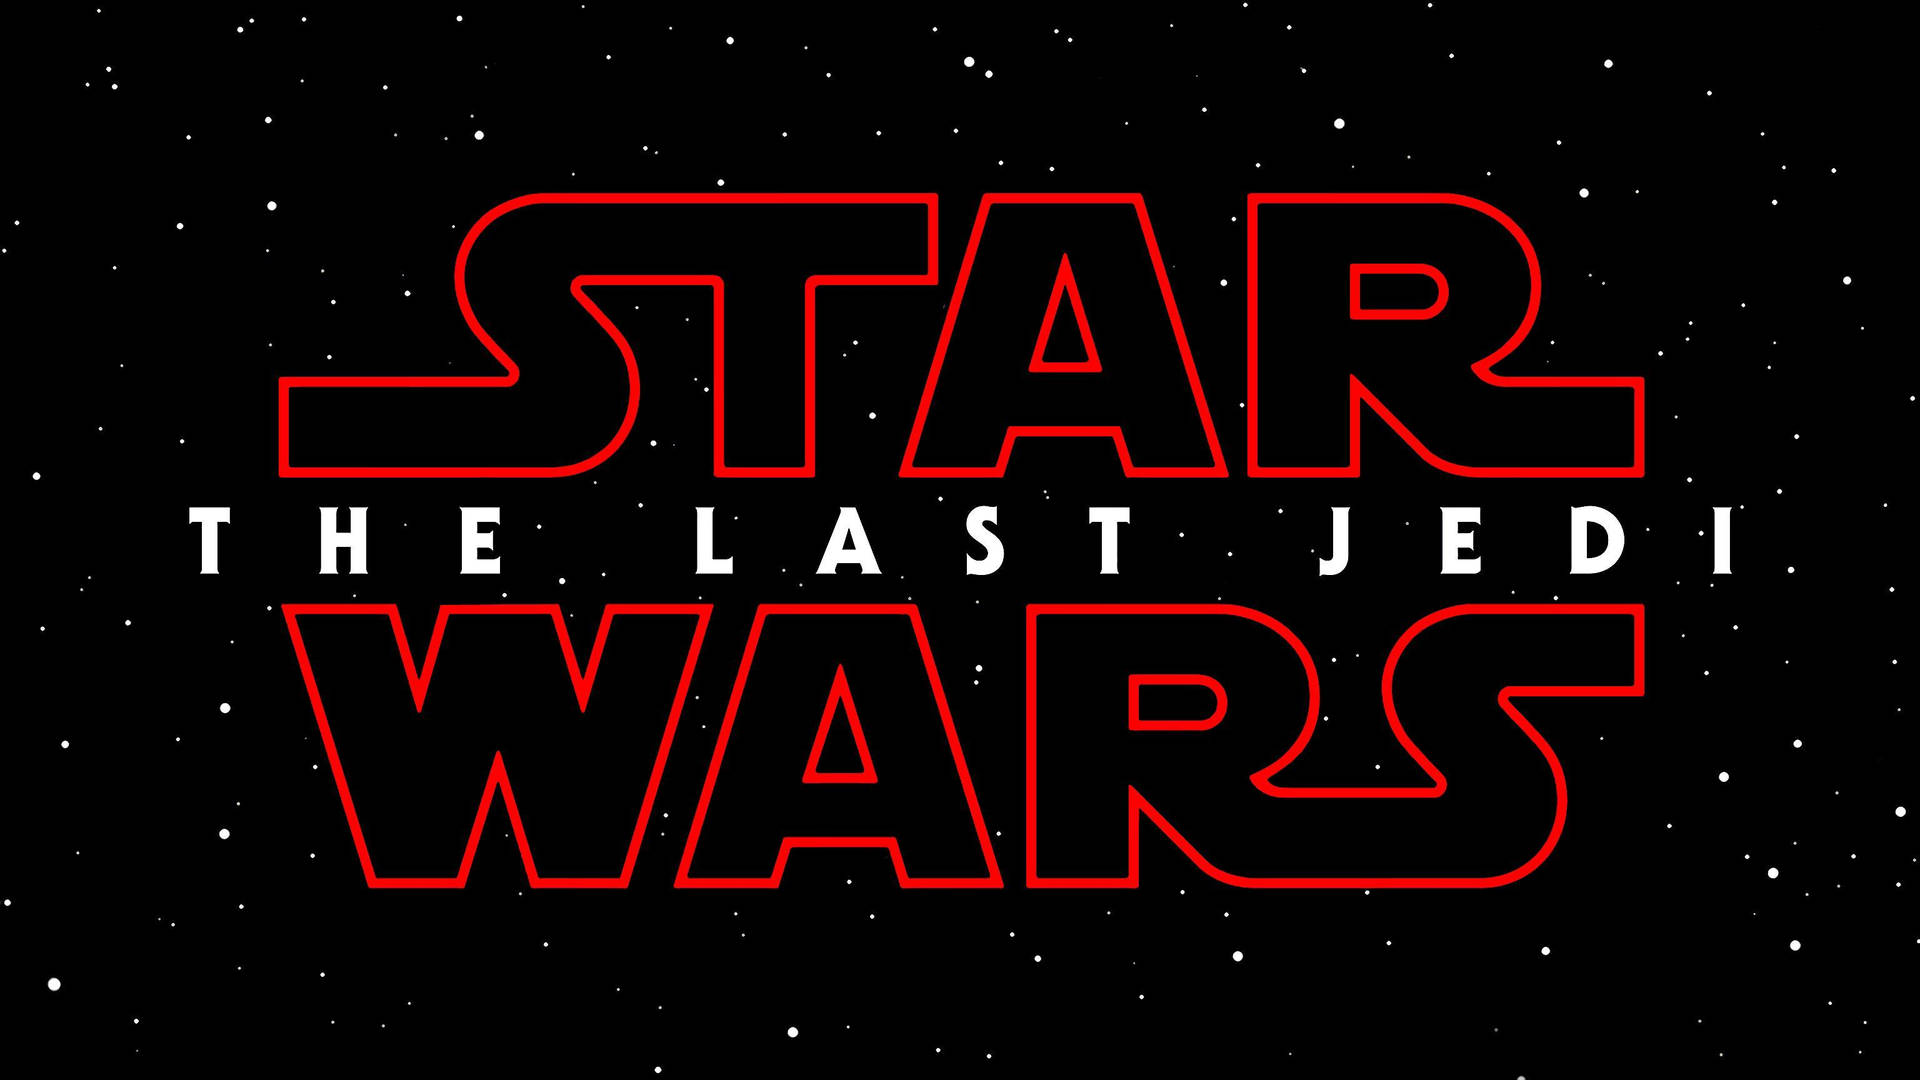 Lacopertina Di Star Wars: Gli Ultimi Jedi. Sfondo